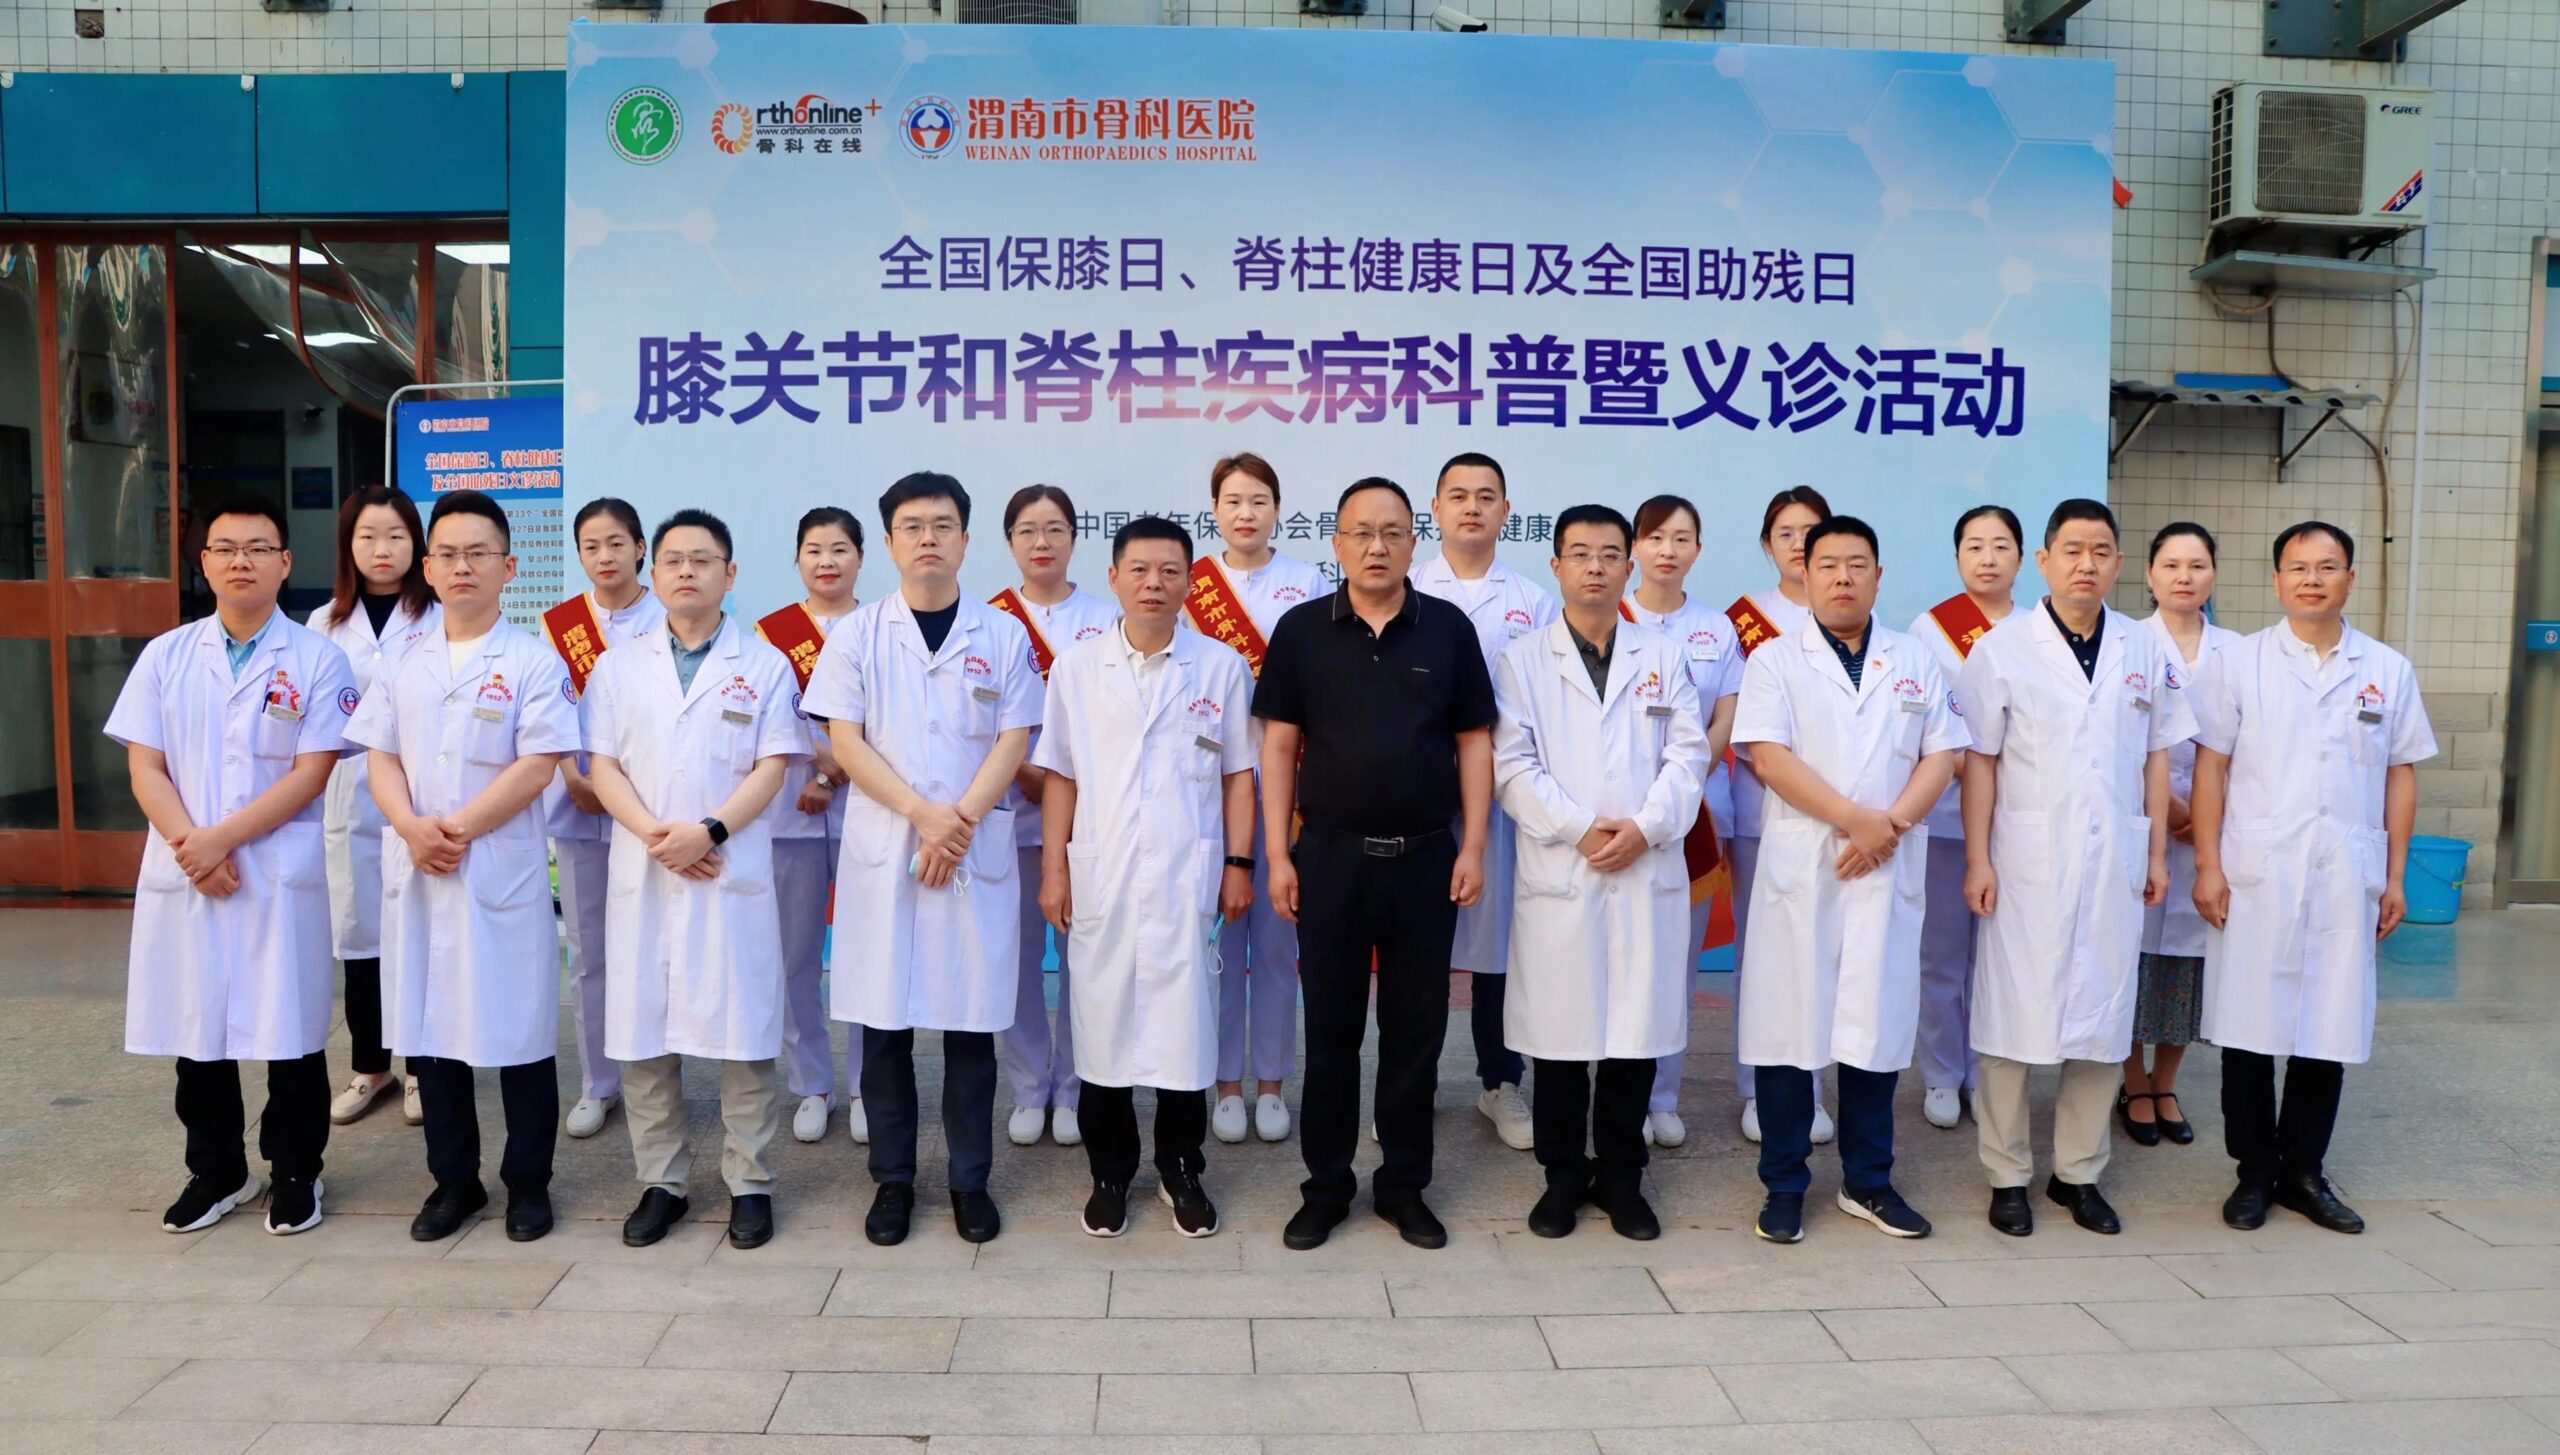 渭南市骨科医院成功举办全国助残日、全国保膝日、世界脊柱日义诊活动